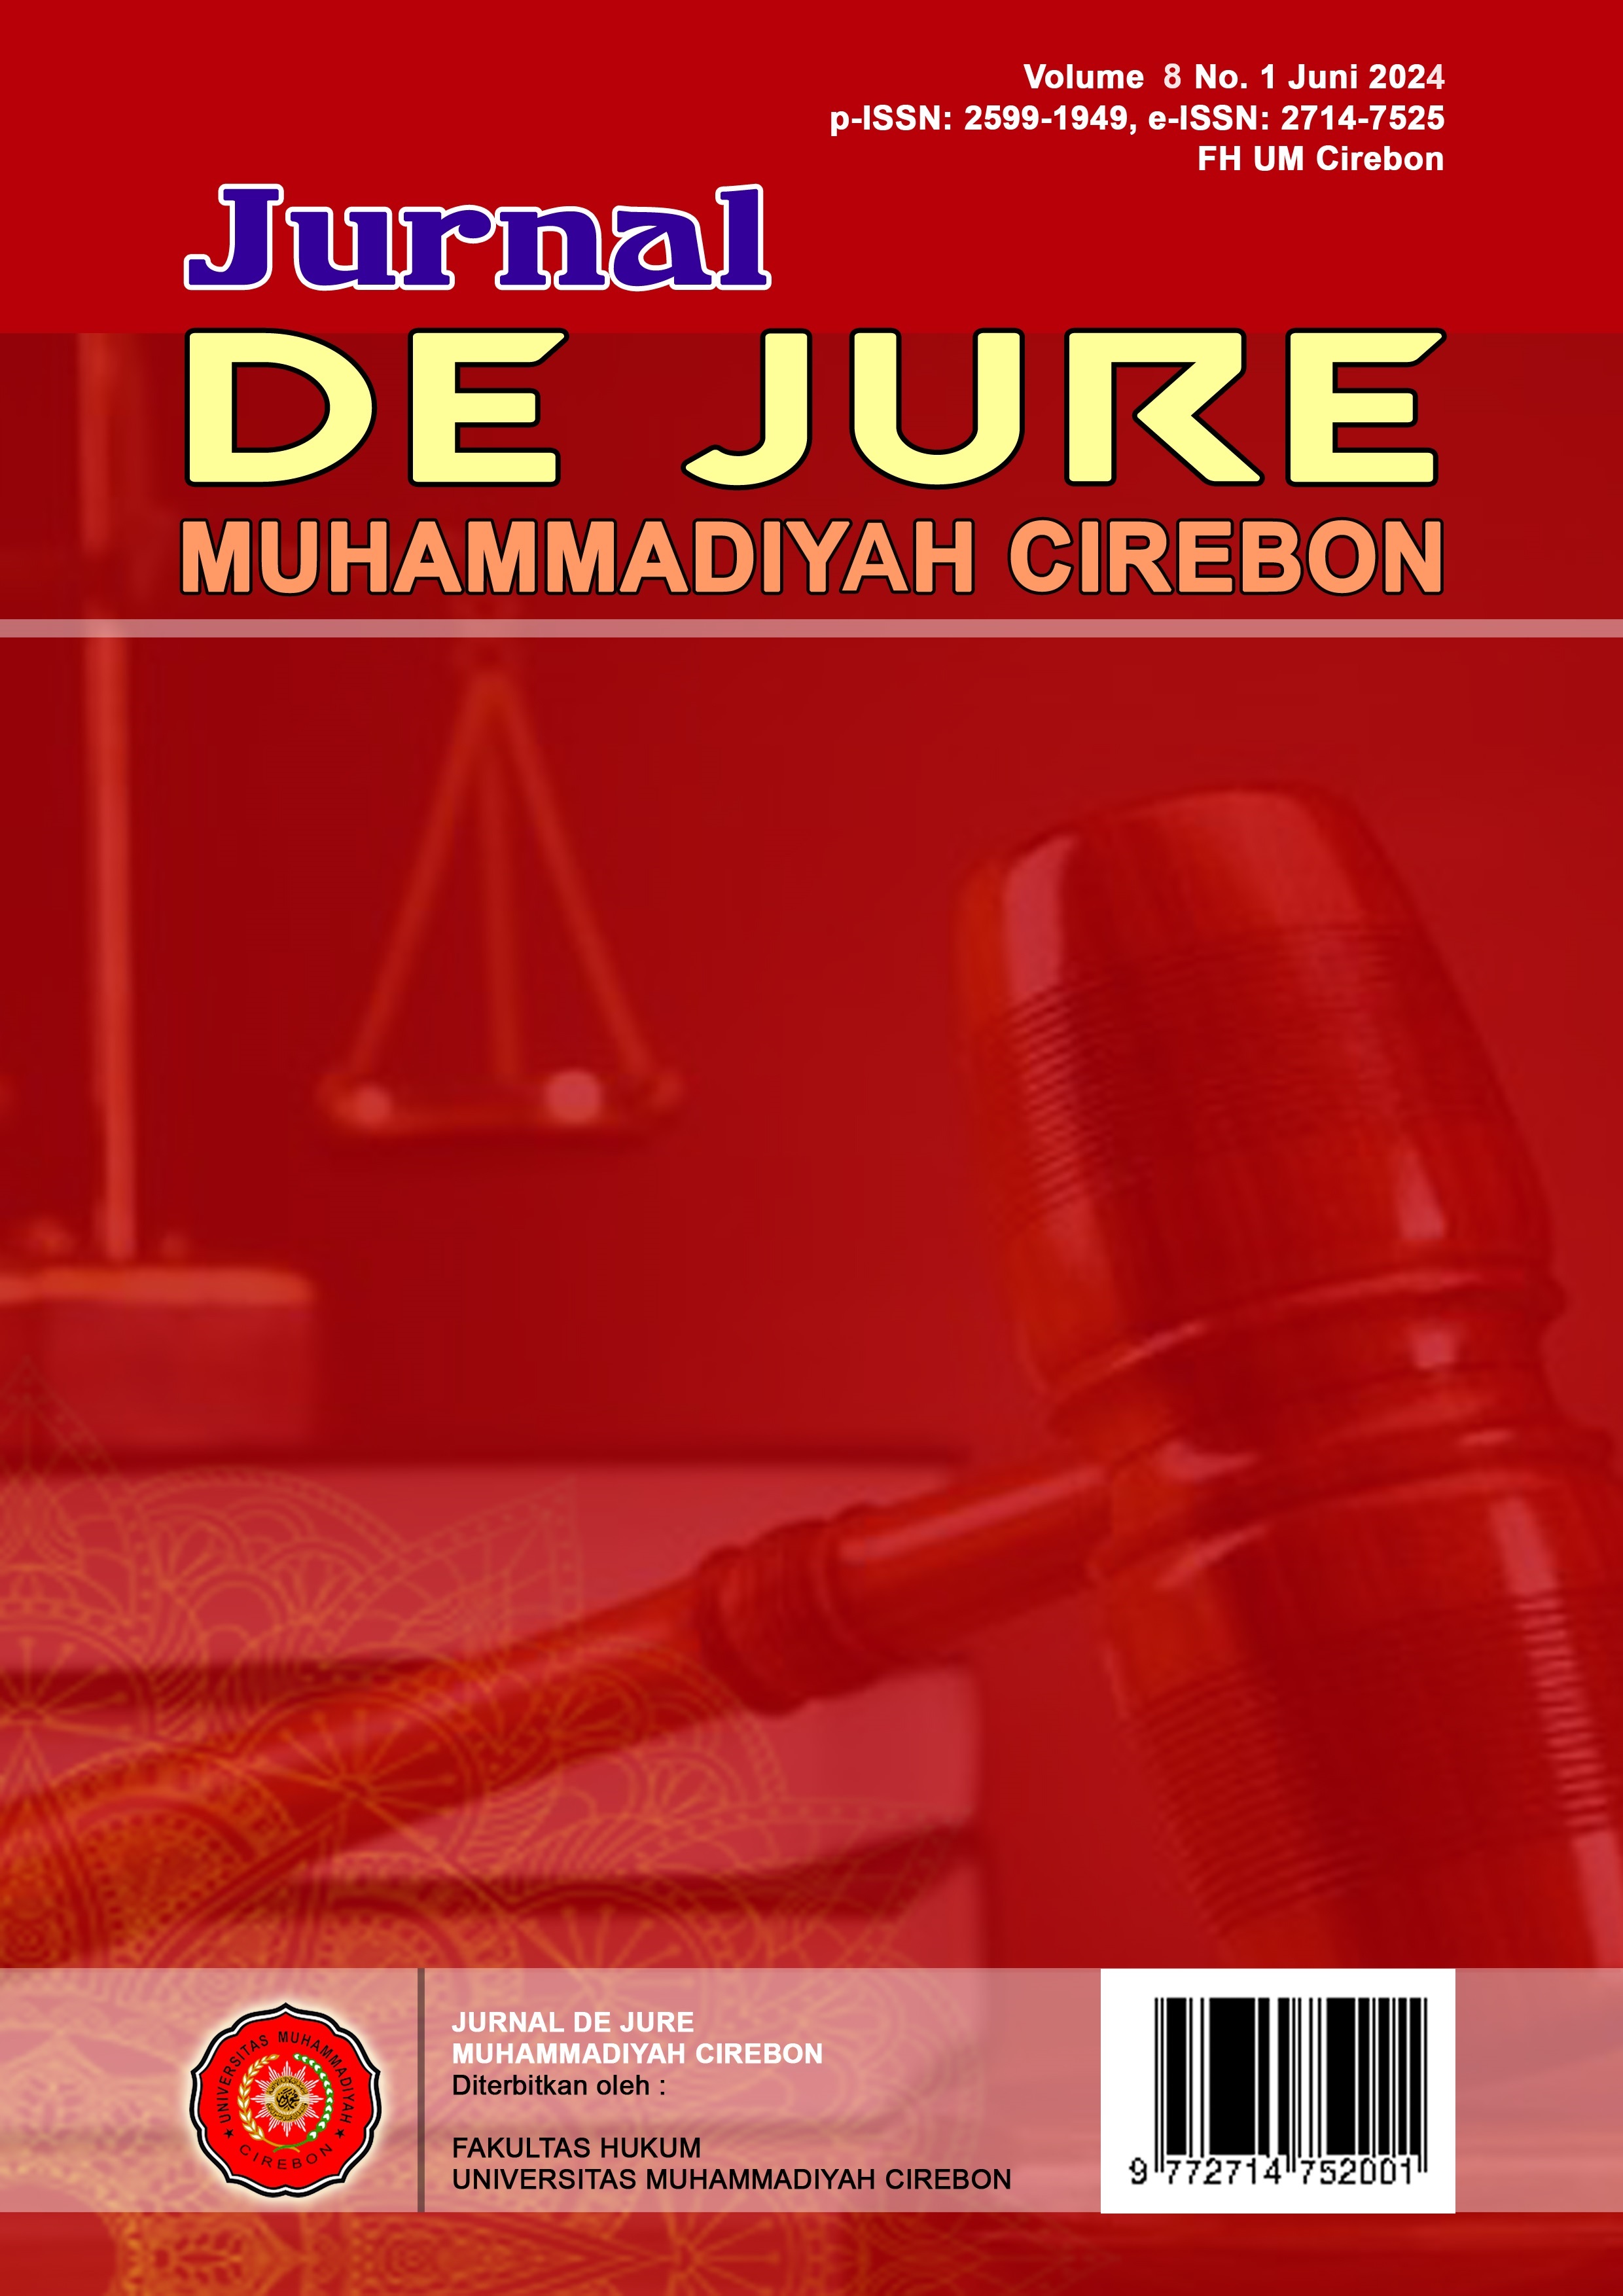 					Lihat Vol 8 No 1 (2024): De Jure Muhammadiyah Cirebon (DJMC)
				